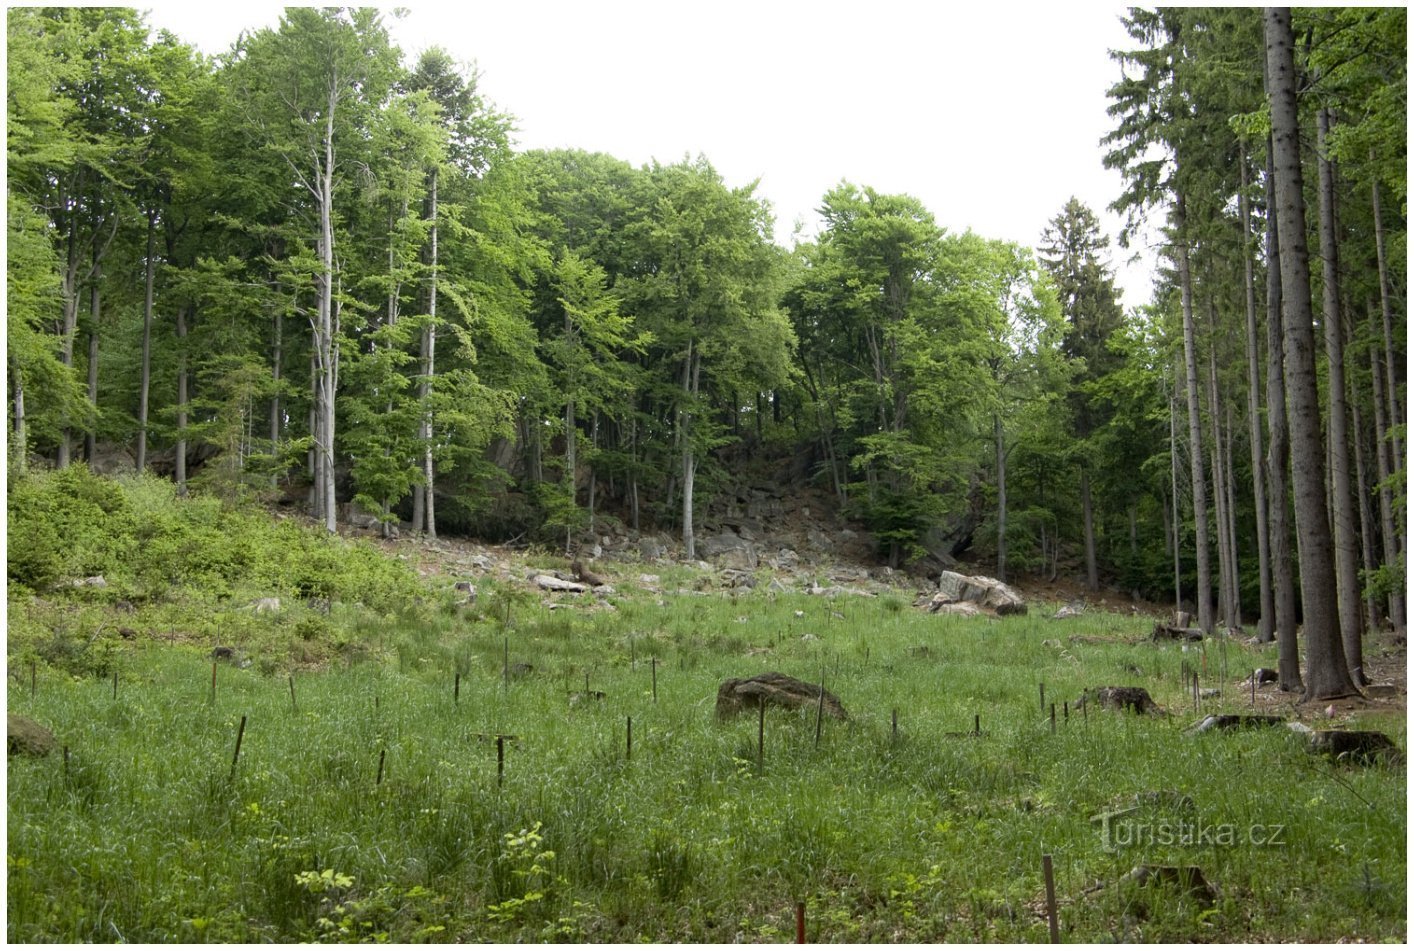 Полностью засаженный деревьями Брэдло в 2007 году.